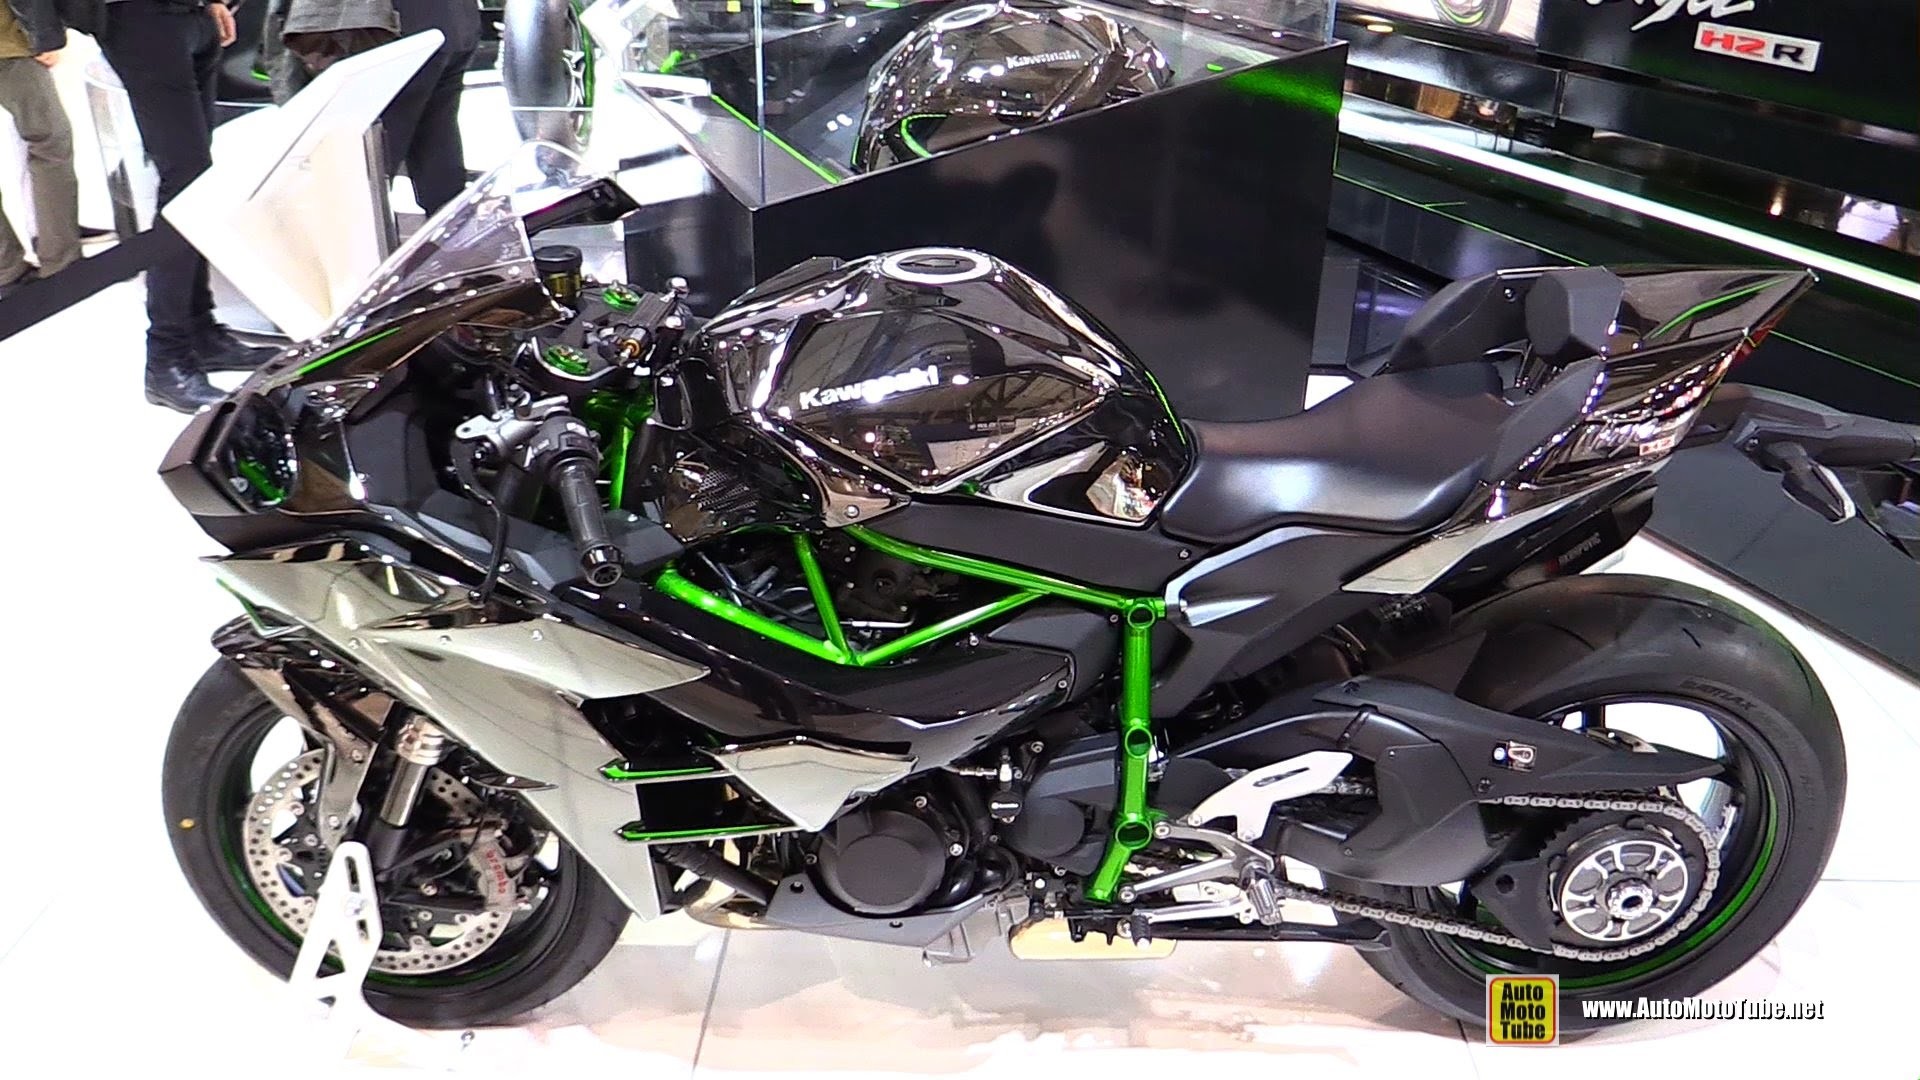 1920x1080 2015 Kawasaki Ninja H2 Super Charged - Walkaround - Debut at 2014 EICMA  Milan Motorcycle Exhibition - YouTube